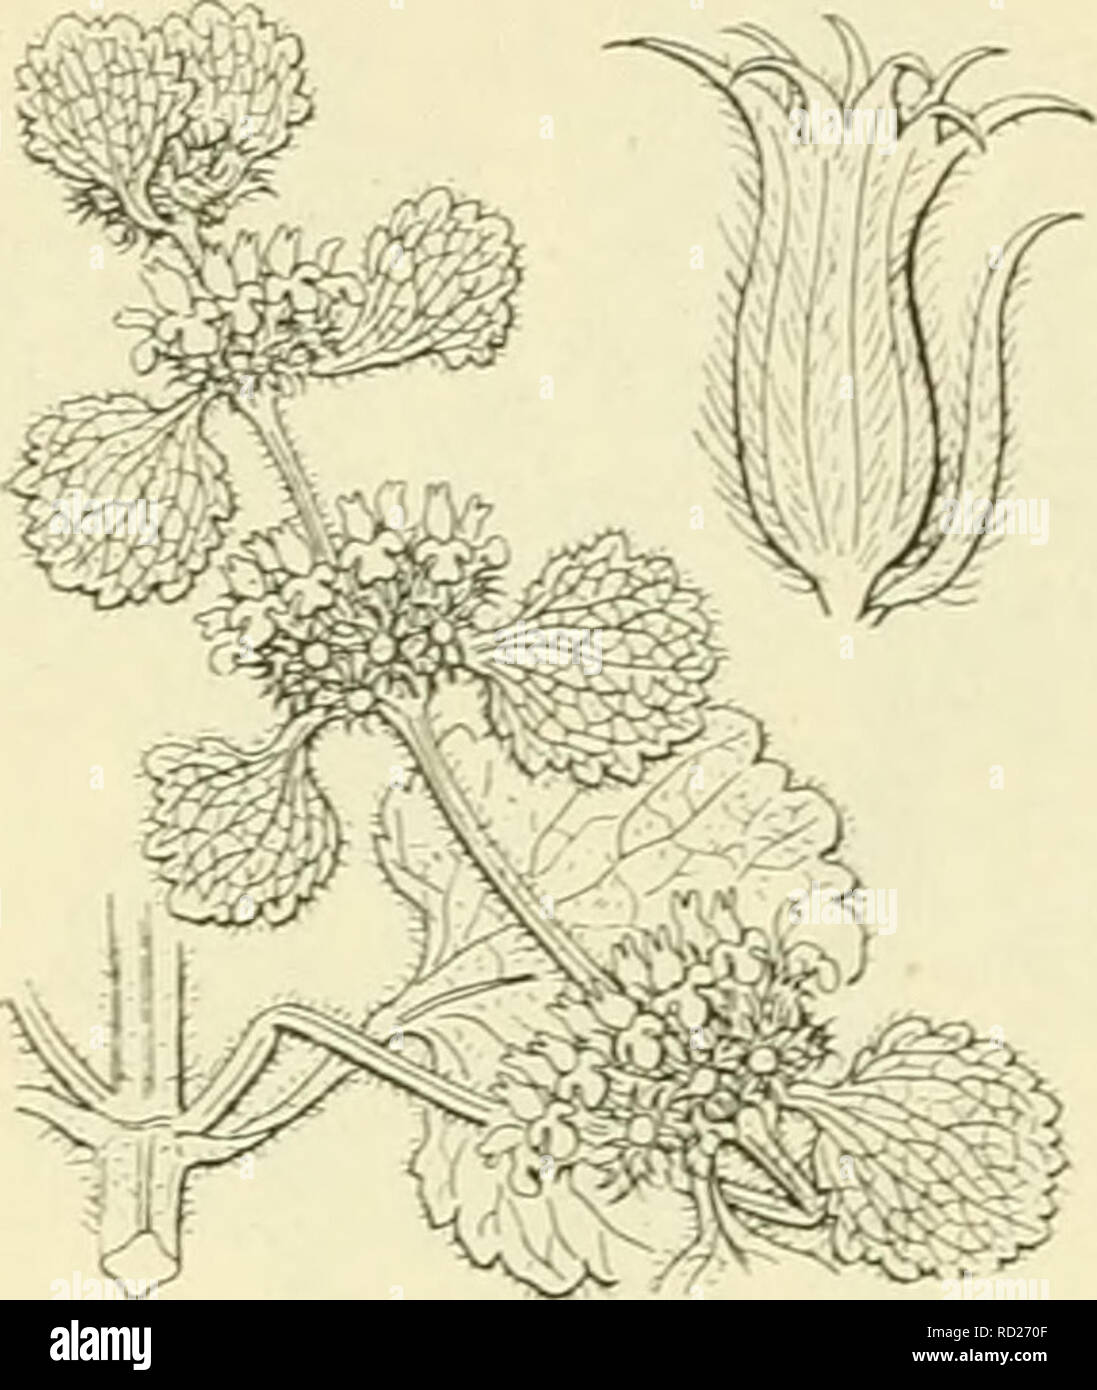 . De flora van Nederland. Plants. 240 â LABIATAE. FAMILIE 95.. Marrubium vulgare F ie;. 293. schutblaadjes (fig. 293). De kelk (fig. 293) is wollig behaard met 5 tusschen- tanden tusschen de gewone. De bloemkroon is wit en heeft een rechtop- staande, bijna rechte, Hjnvormige bovenlip, die in 2 smalle slippen is gespleten, de onderlip is neergebogen, veel breeder, 3-lobbig, de midden- lob is langer en breeder dan de zijlobben, stomp uitgerand, terwijl de zijlobben kort, smal en vrij spits zijn. De vruchten zijn lichtbruin, kaal, omgekeerd eirond. 3-6 dM. 2].. JuliâHerfst. Biologische bijzonderh Stock Photo